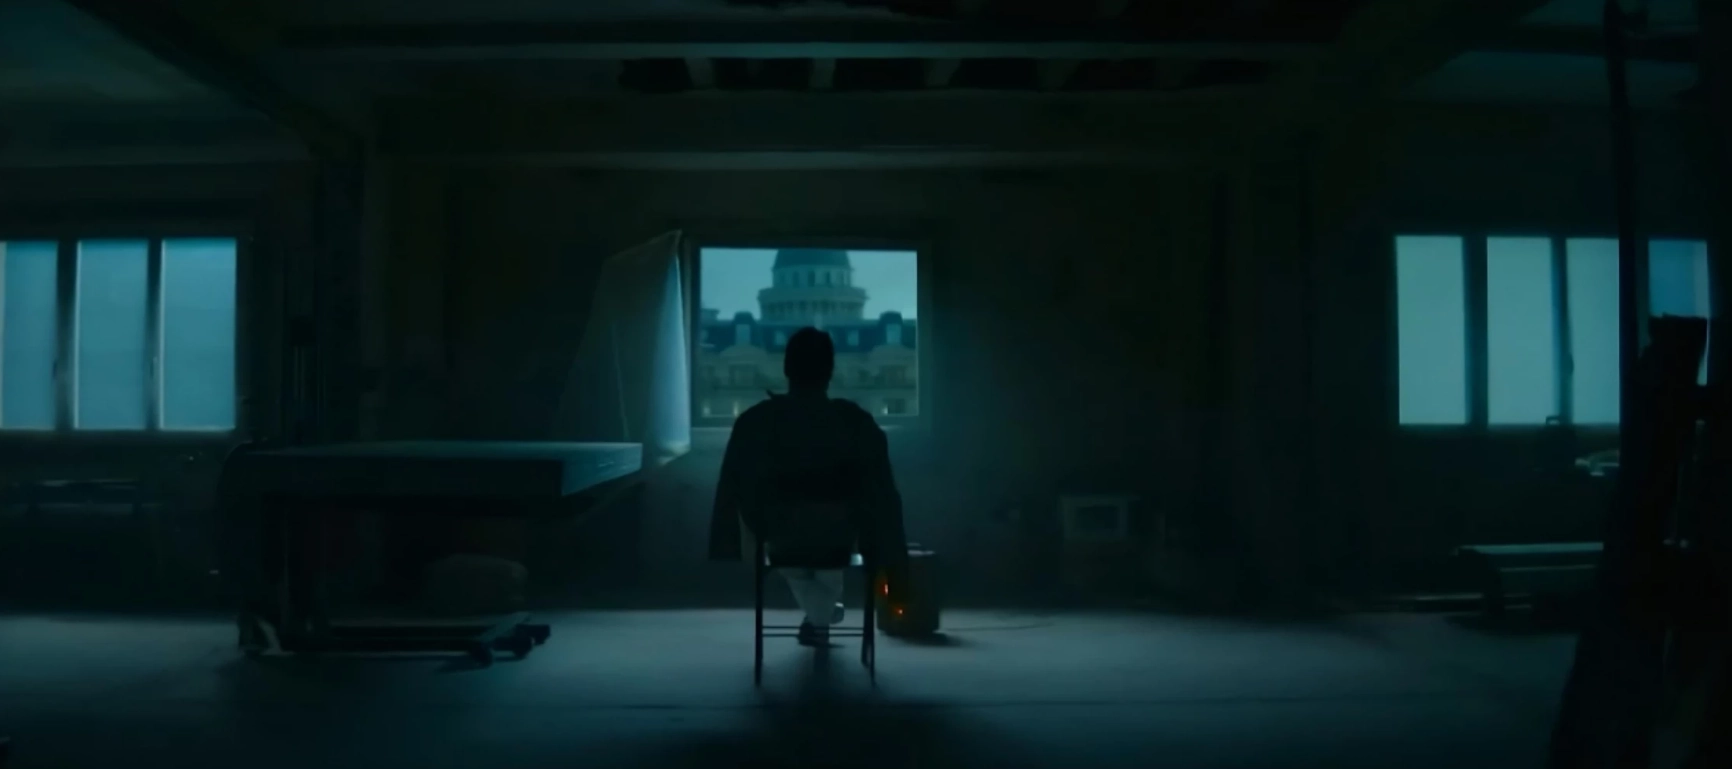 รีวิว The Killer - หนังระทึกขวัญของ David Fincher เกี่ยวกับนักฆ่าปรัชญา